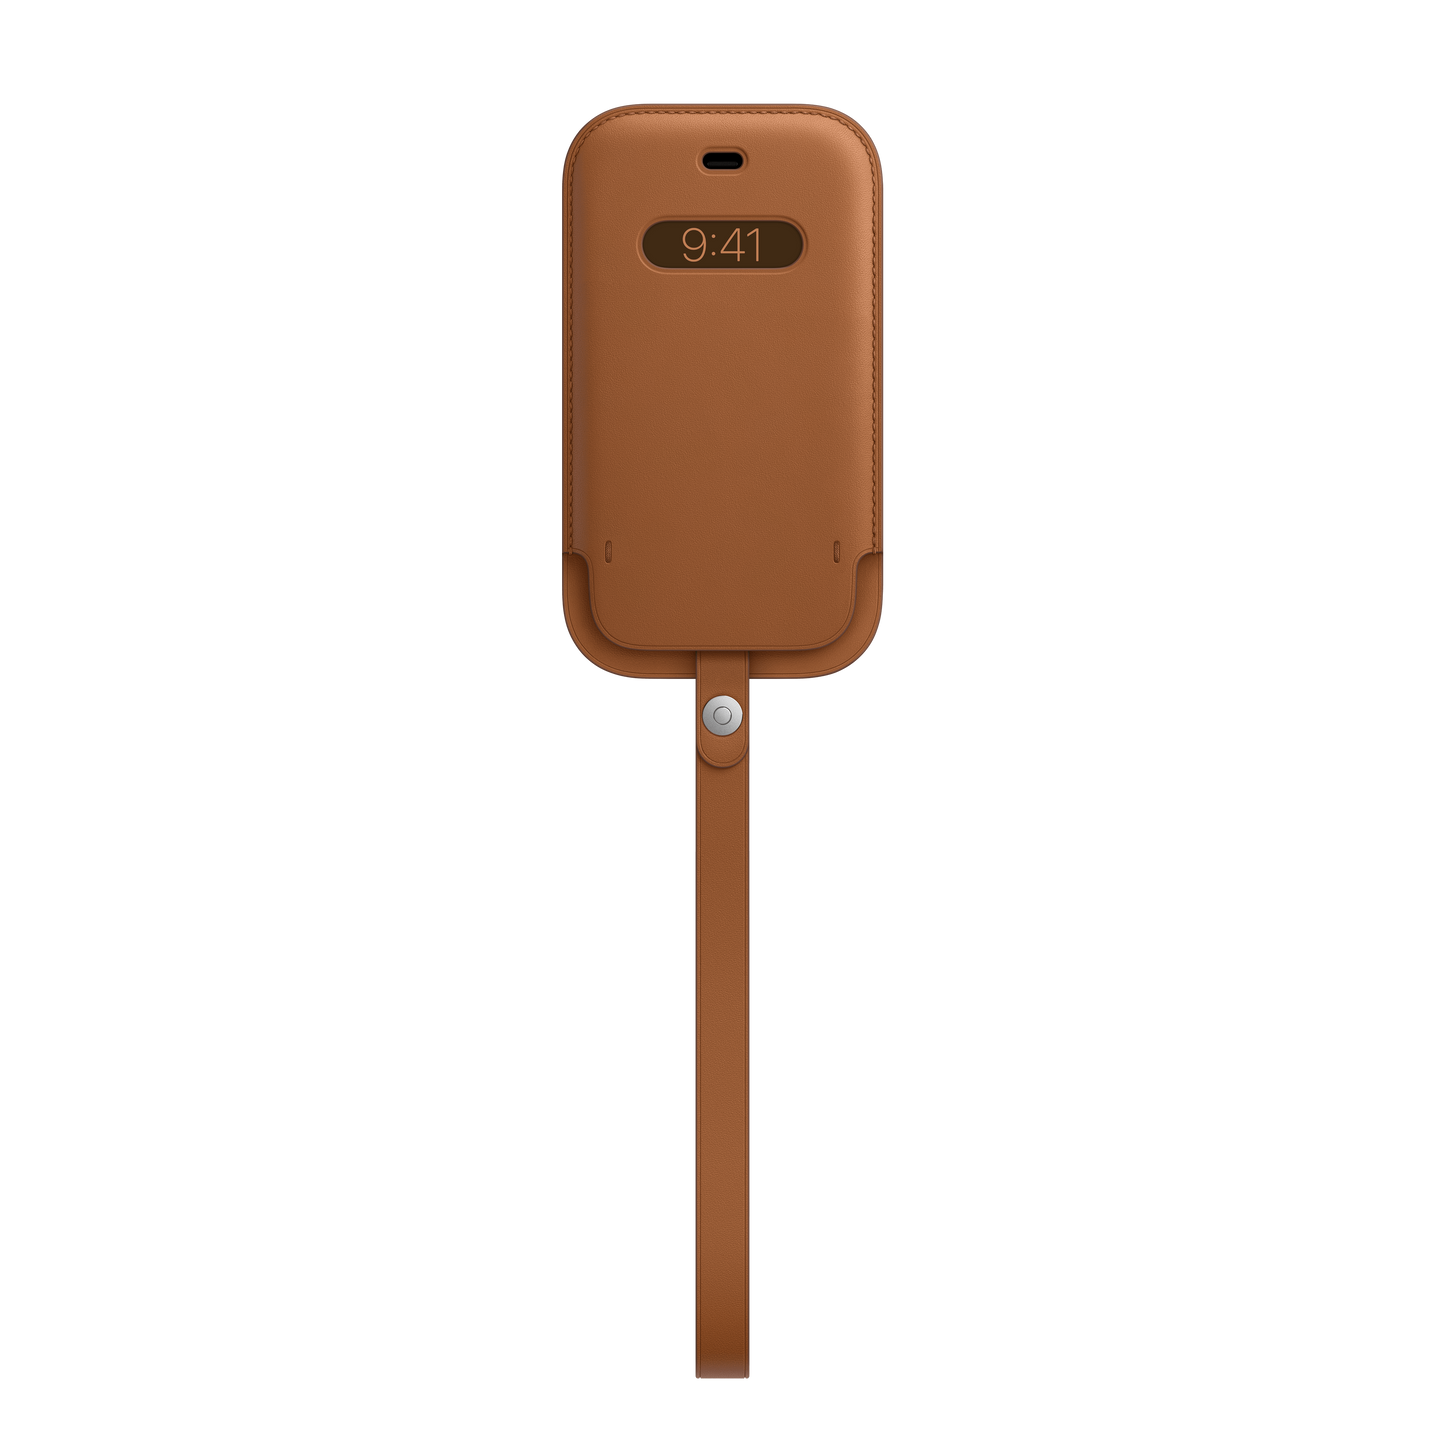 Funda integral de piel con MagSafe para el iPhone 12 mini, Marrón caramelo - Rossellimac